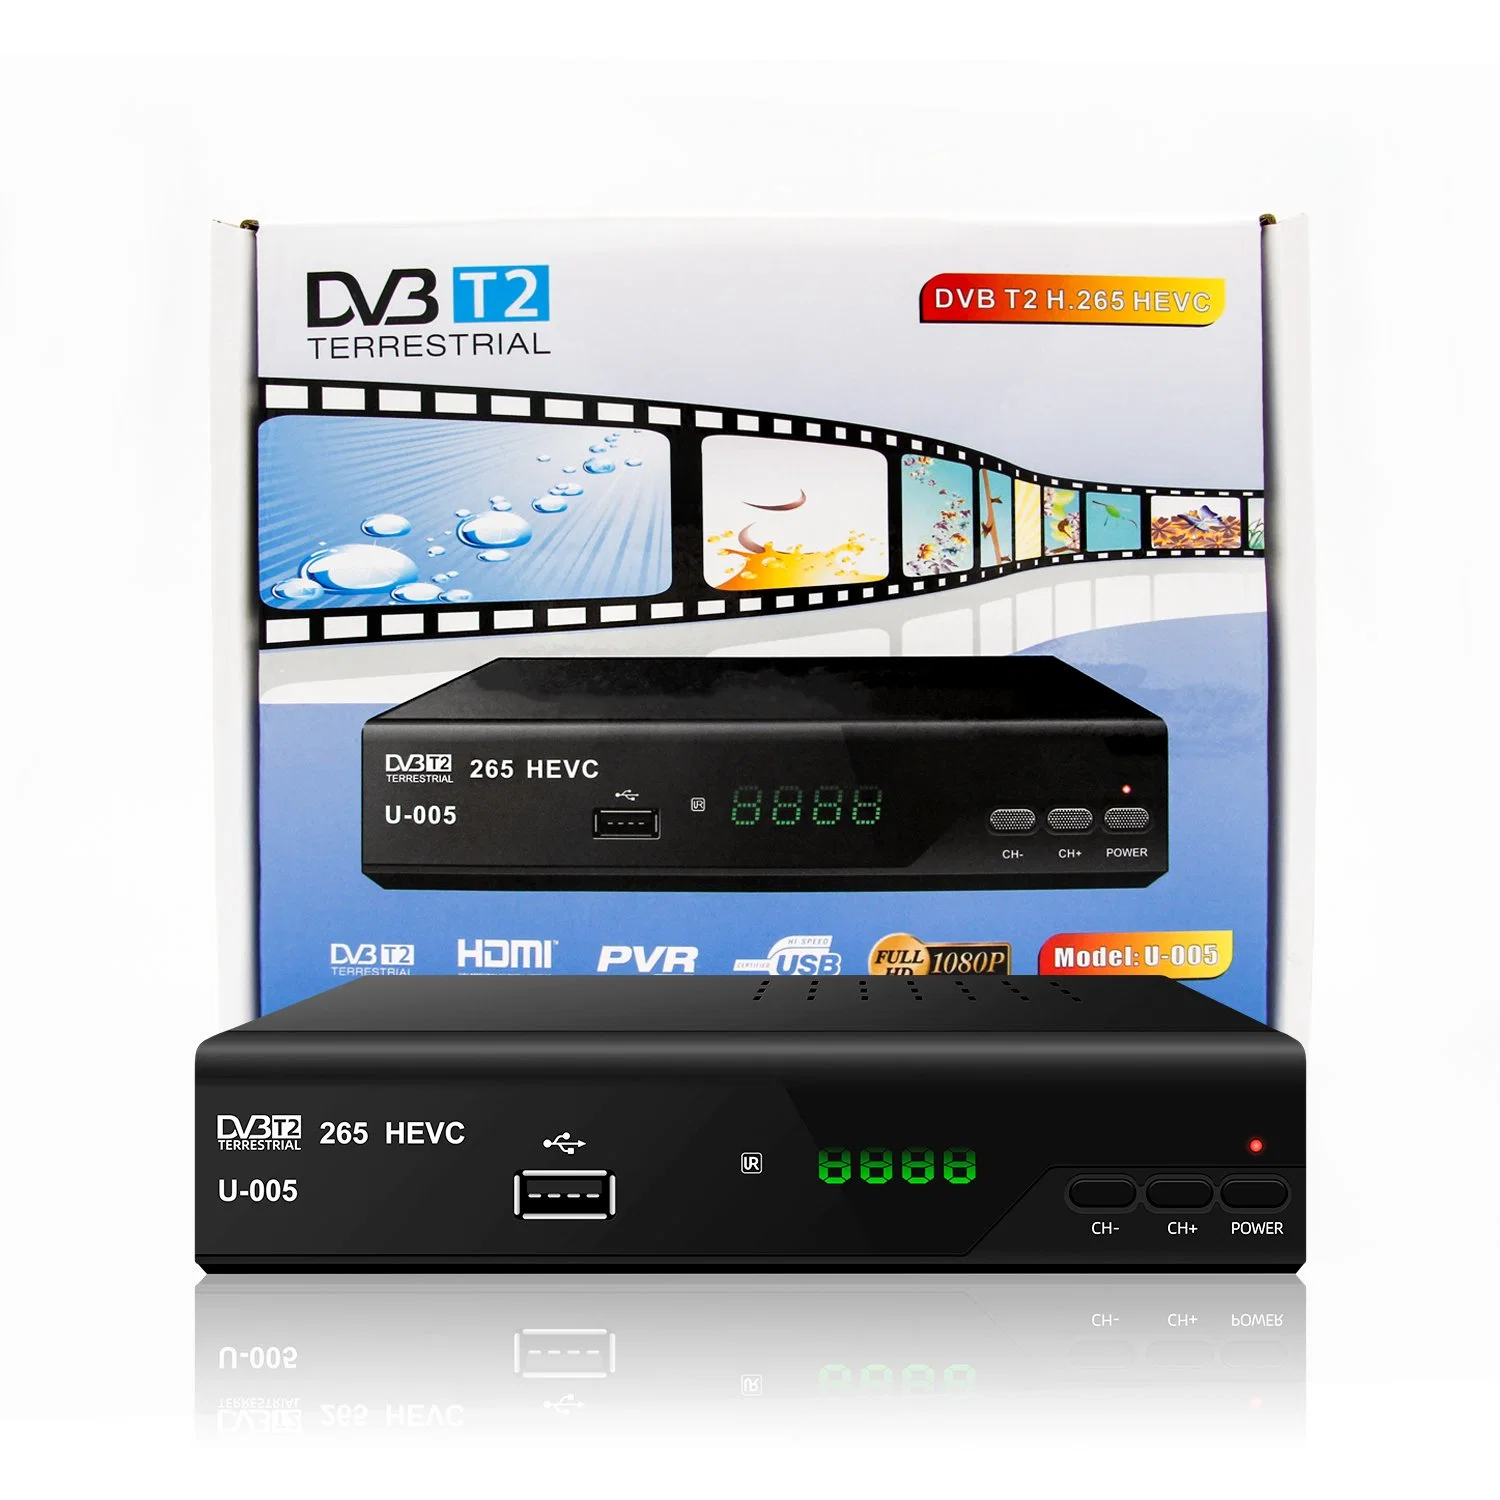 Vente chaude Hevc DVB T2 Set Top Box tchèque de la France l'appui DVB-T2 H. 265 récepteur de télévision